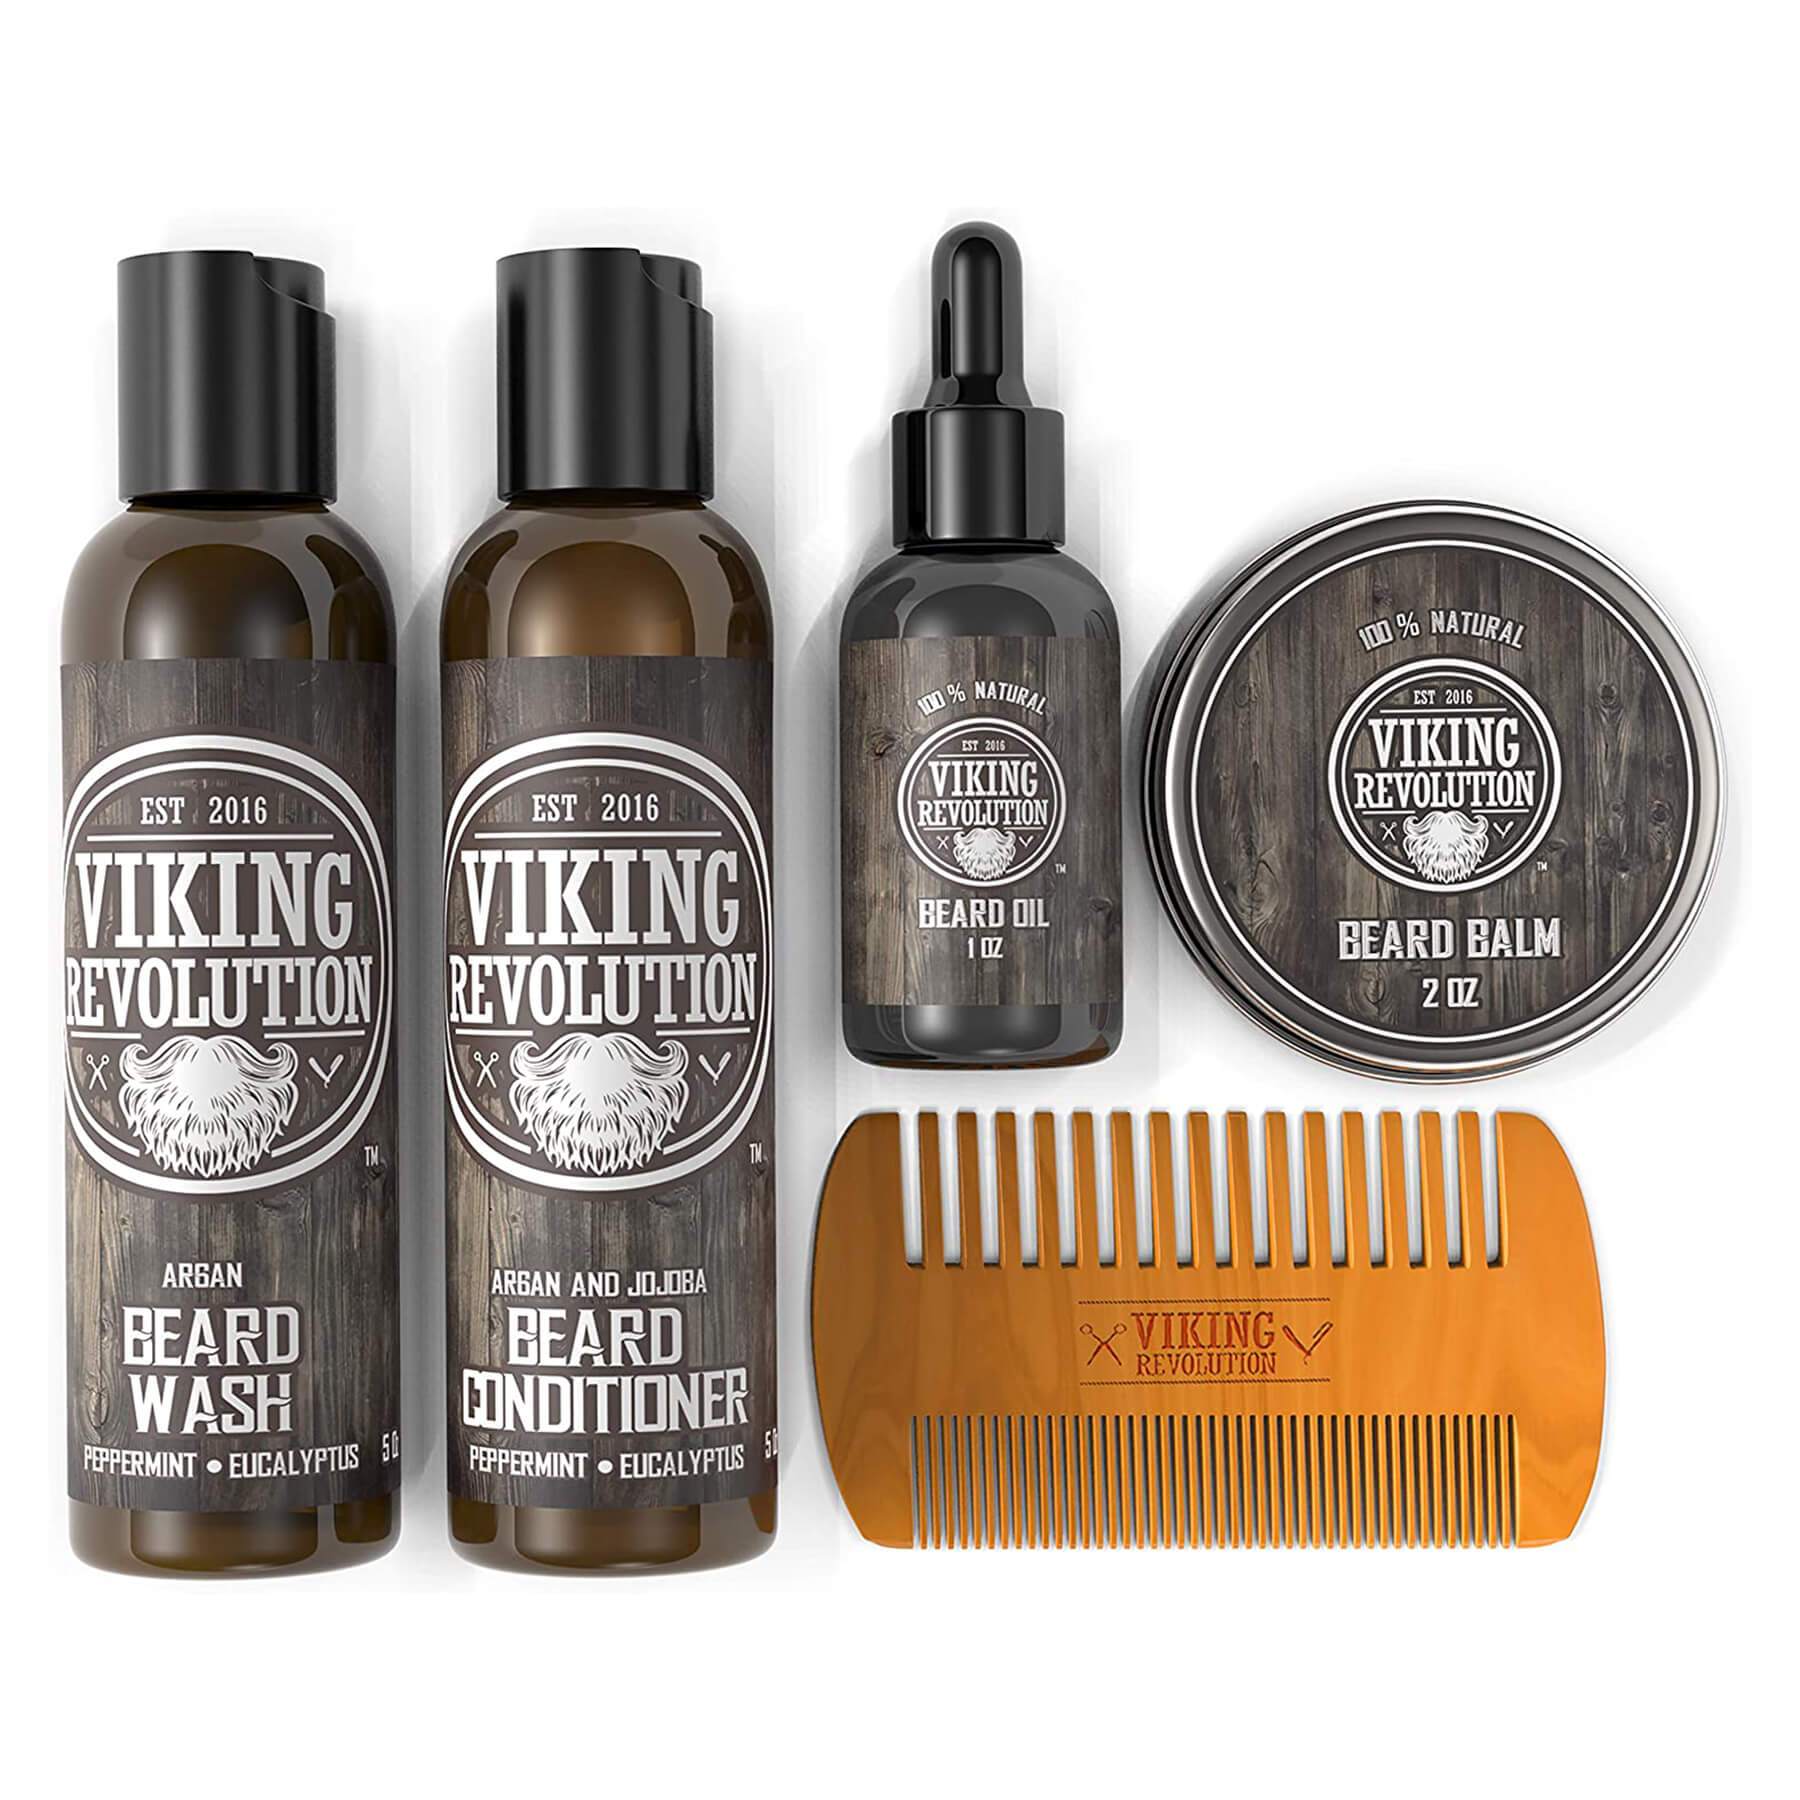 Ultimate Beard Care Conditioner Kit - Beard Grooming Kit for Men Softens